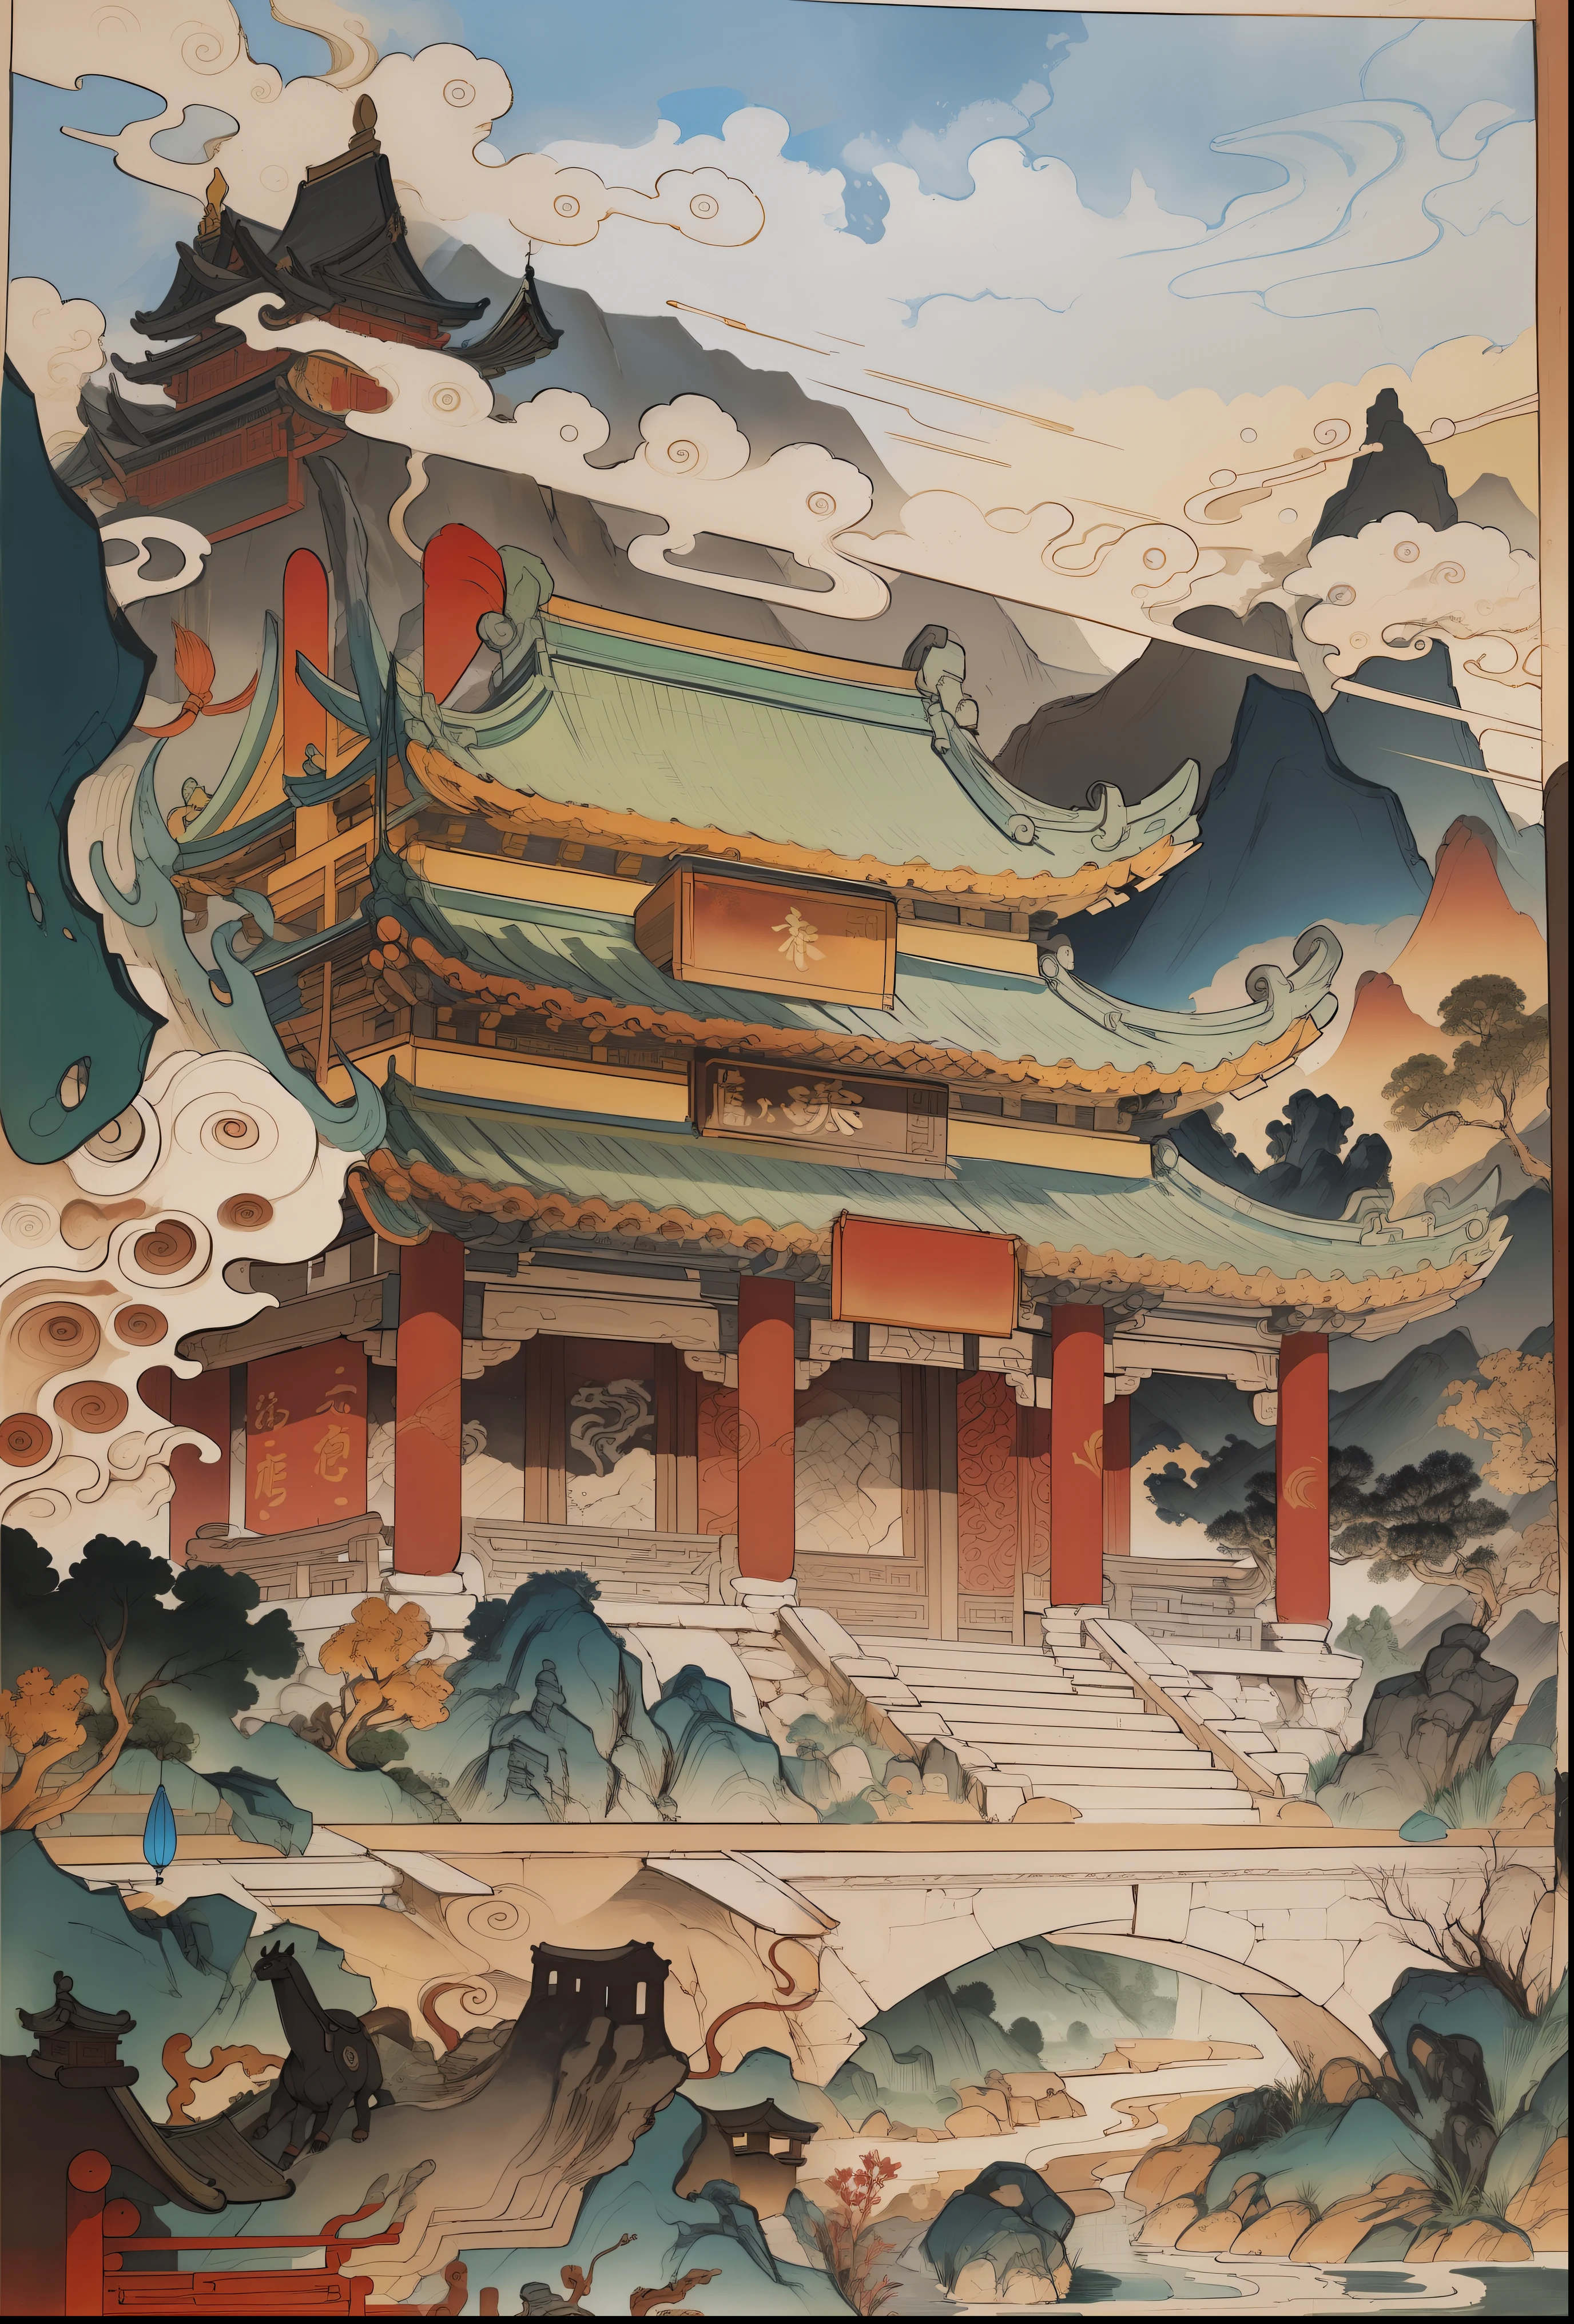 ภูมิทัศน์ของจีนโบราณ, อาคารโบราณ, ศาลา, คานแกะสลักและทาสีอาคาร, ภูเขาและแม่น้ำที่สวยงาม, แรงบันดาลใจจากศิลปะการต่อสู้ของ Jin Yong, แสงแดด, สไตล์การวาดภาพด้วยหมึก, สีที่สะอาด, การตัดอย่างเด็ดขาด, ที่ว่าง, ด้วยมือเปล่า, ผลงานชิ้นเอก, รายละเอียดสุดยอด, องค์ประกอบที่ยิ่งใหญ่, คุณภาพสูง , คุณภาพสูงสุด, สไตล์พิกซาร์, อิ่มตัวมากเกินไป, เหนือจริง, อาร์เจิร์ม --v 6